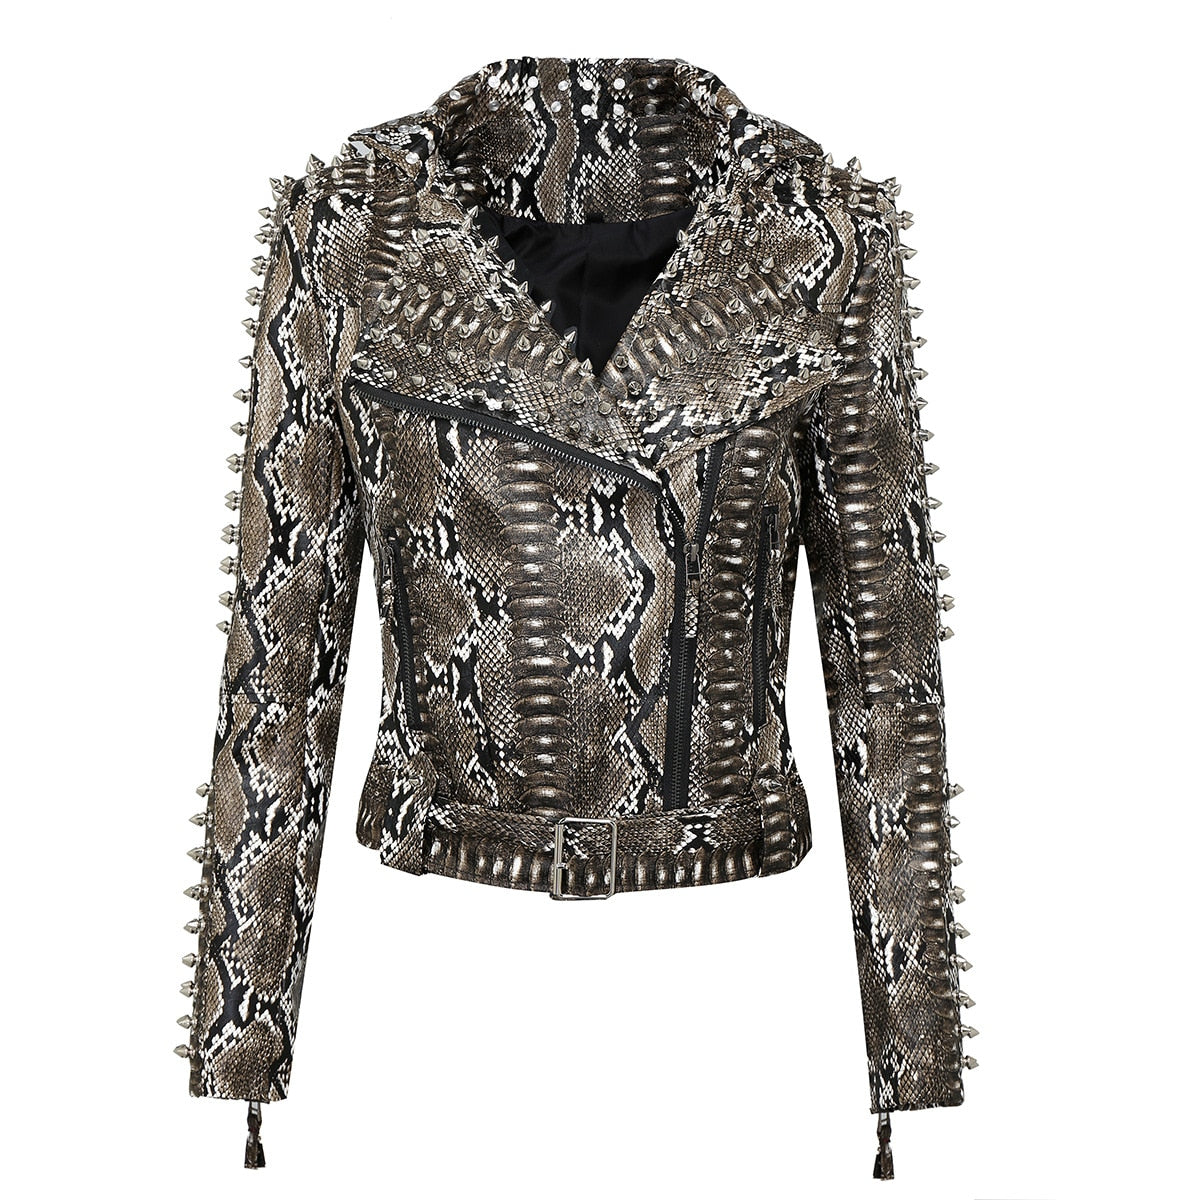 Python Leather Jacket | Snakes Jewelry & Fashion